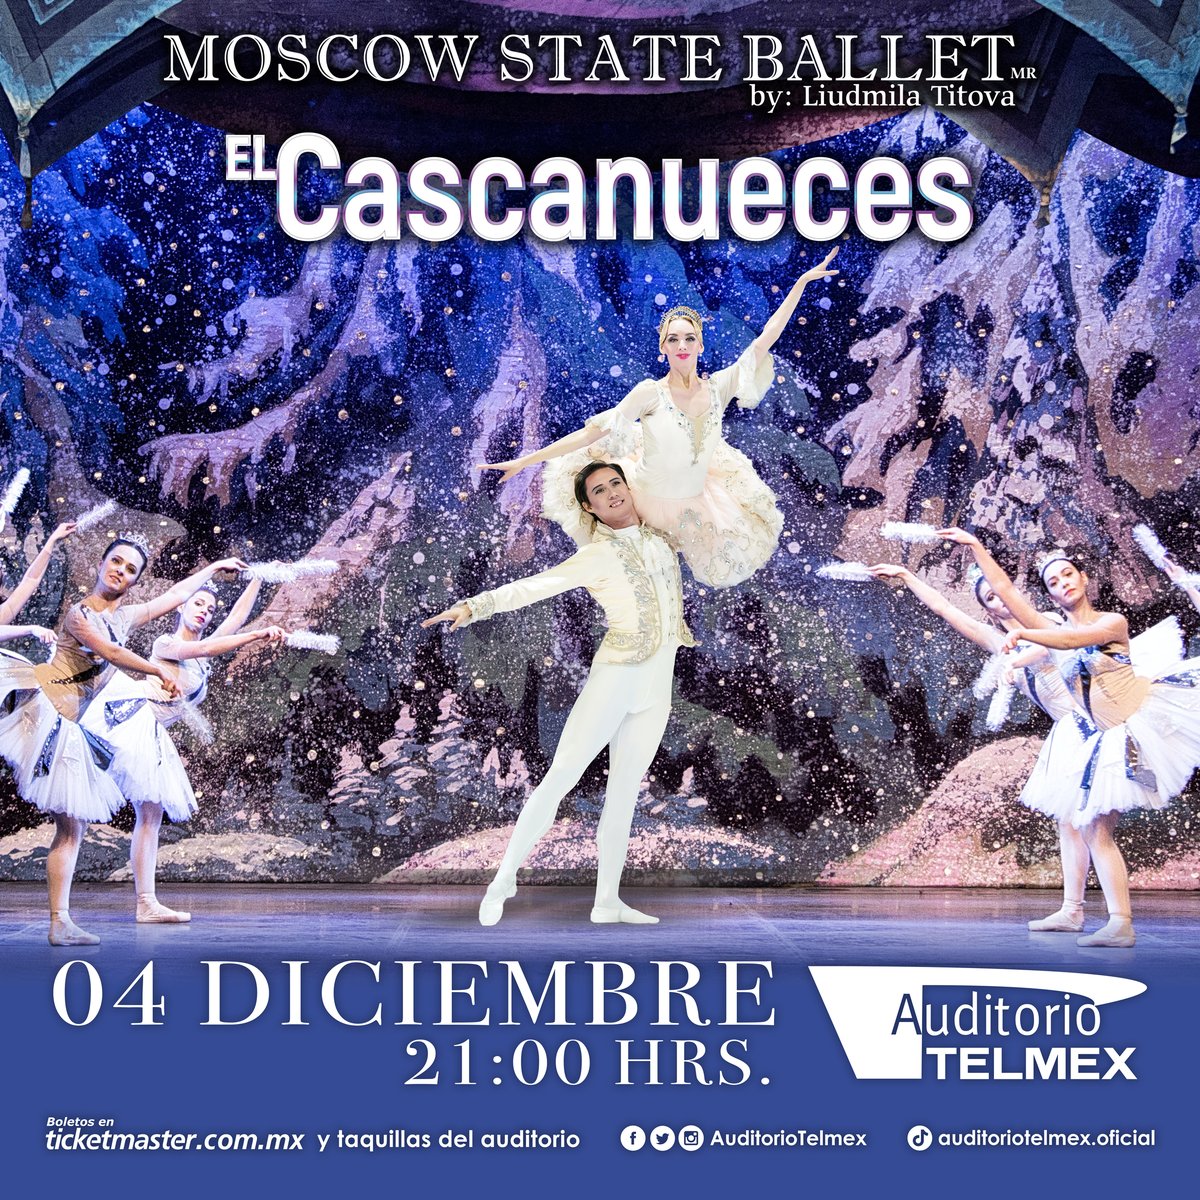 ¡El Moscow State Ballet regresa al Auditorio TELMEX con 'El Cascanueces'! ¡No te pierdas de este increíble clásico! 🤩 📅 04 Diciembre | 🕗 21:00 hrs 🎫 Boletos a la venta a partir de hoy 21 de mayo en Ticketmaster y taquilla del Auditorio TELMEX sin cargo por servicio.